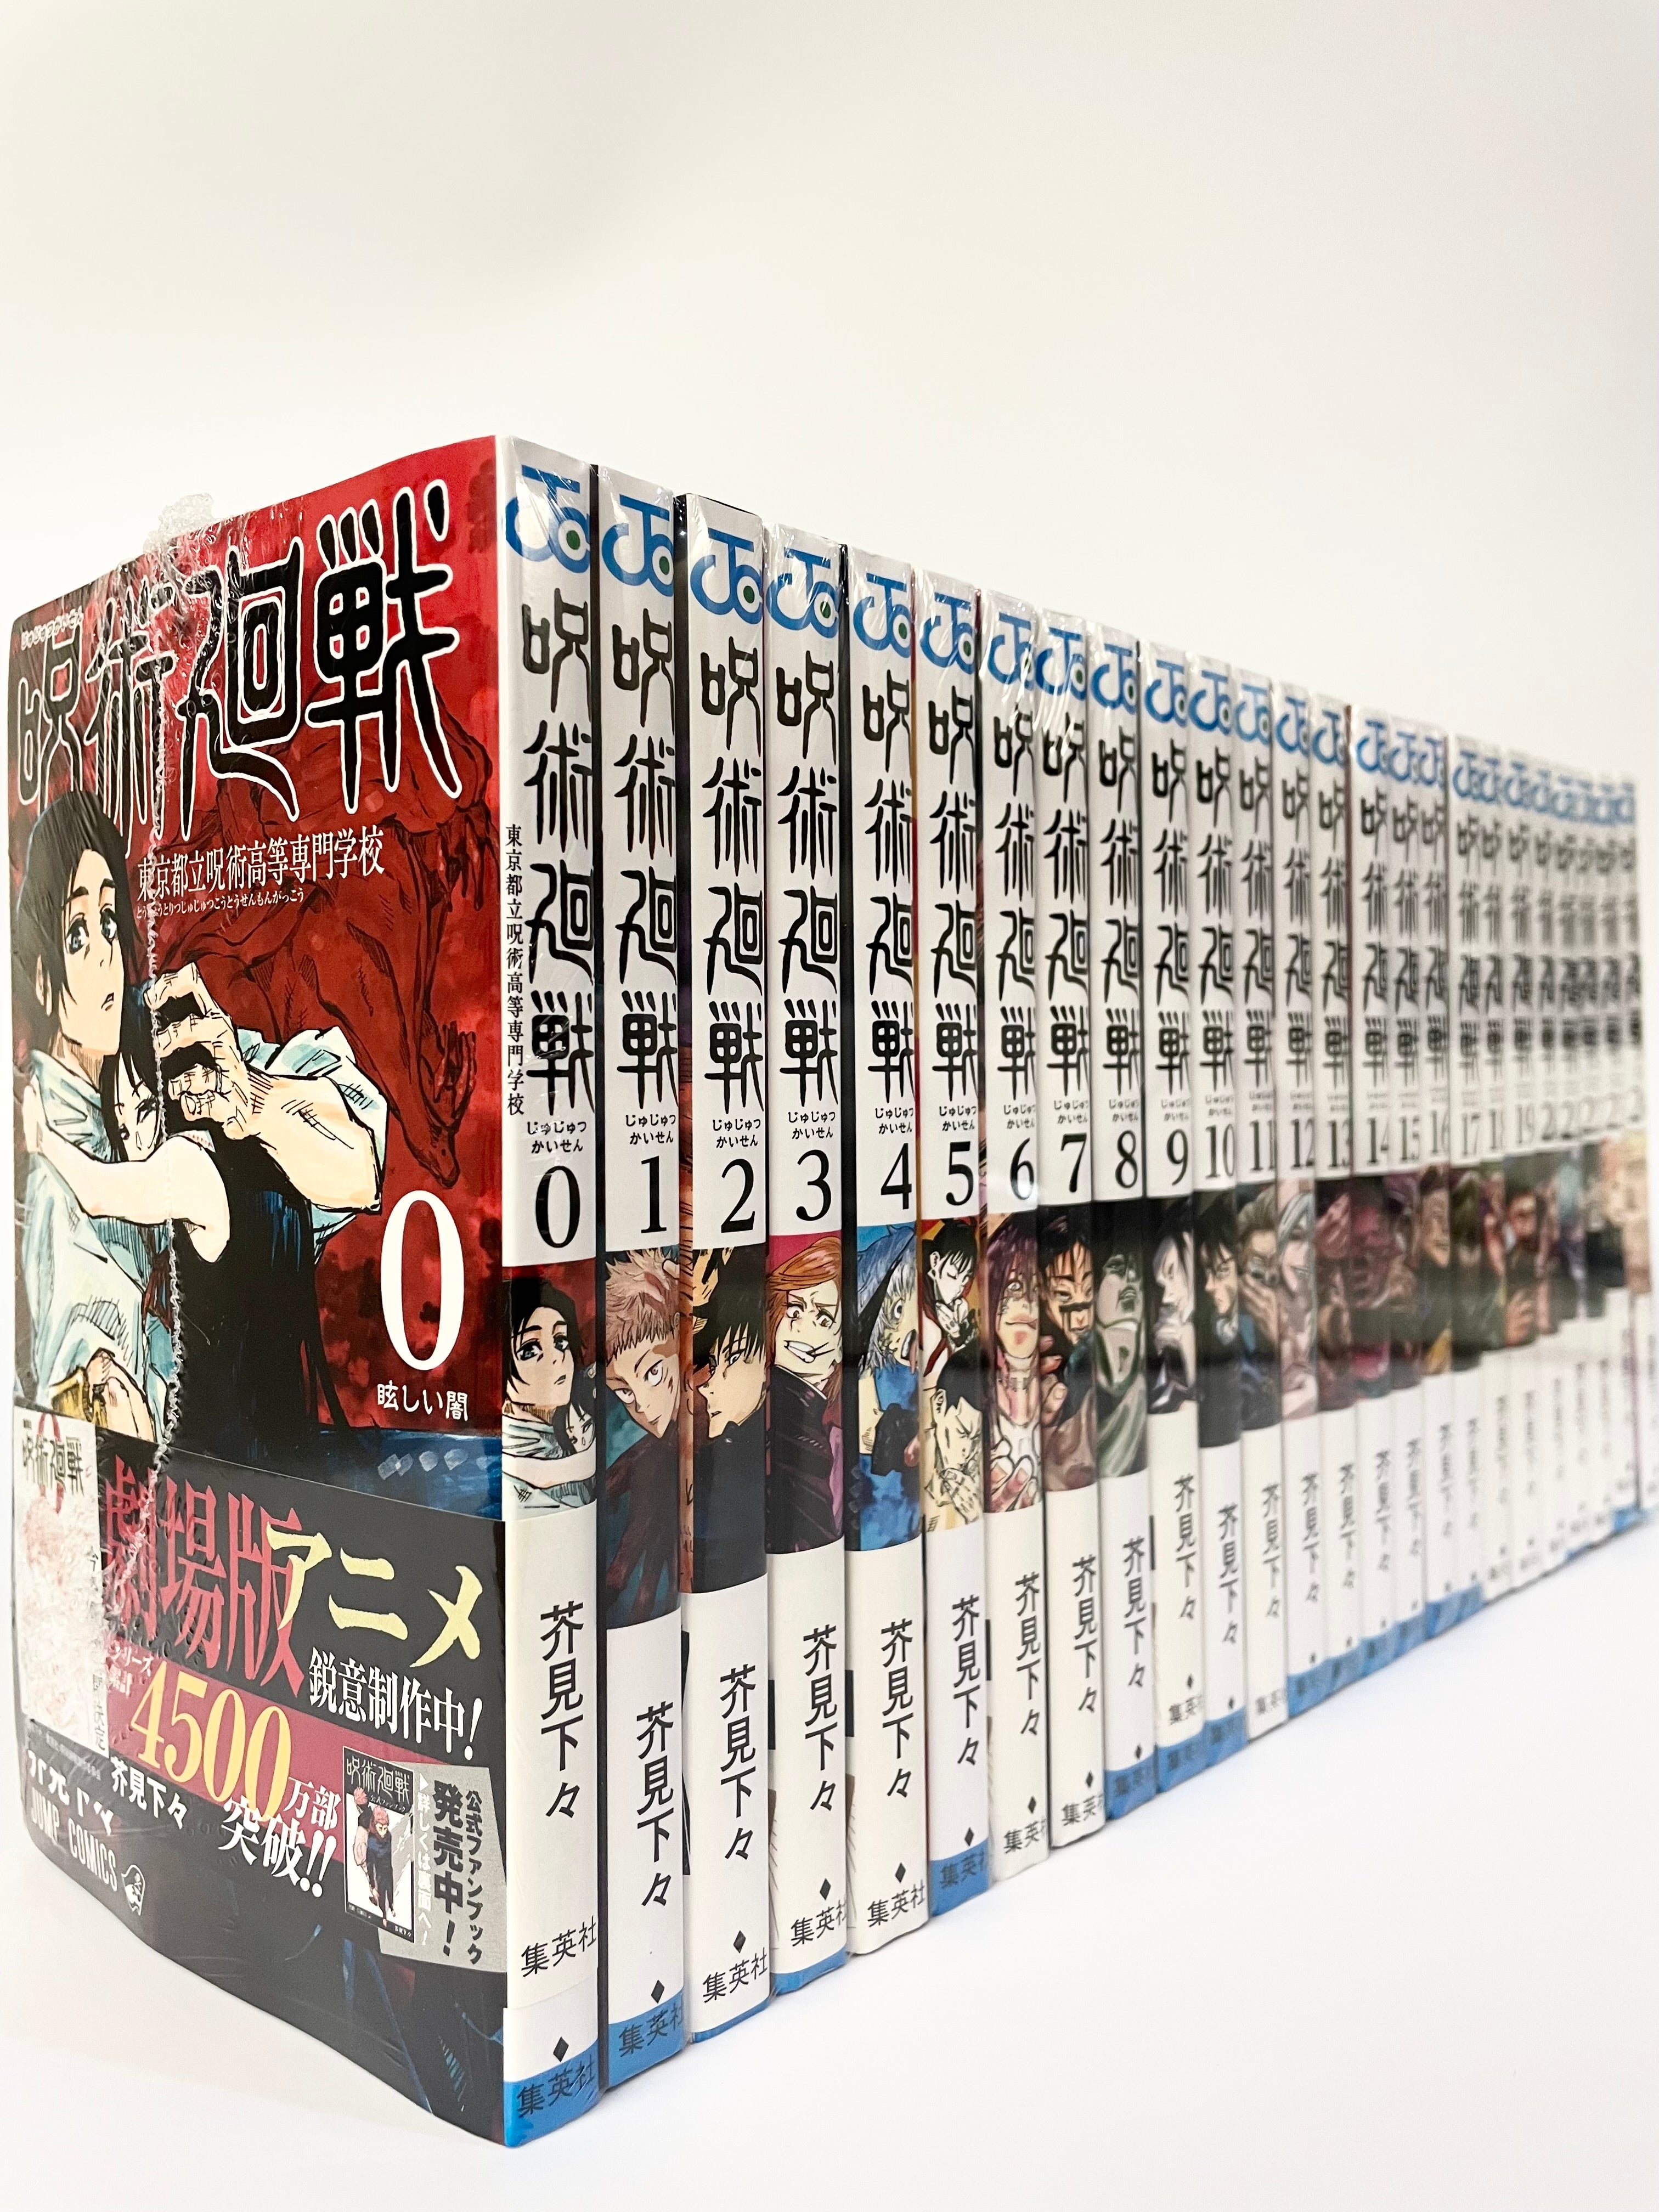 Jujutsu Kaisen Manga Volume 1 - 3 Collection Set